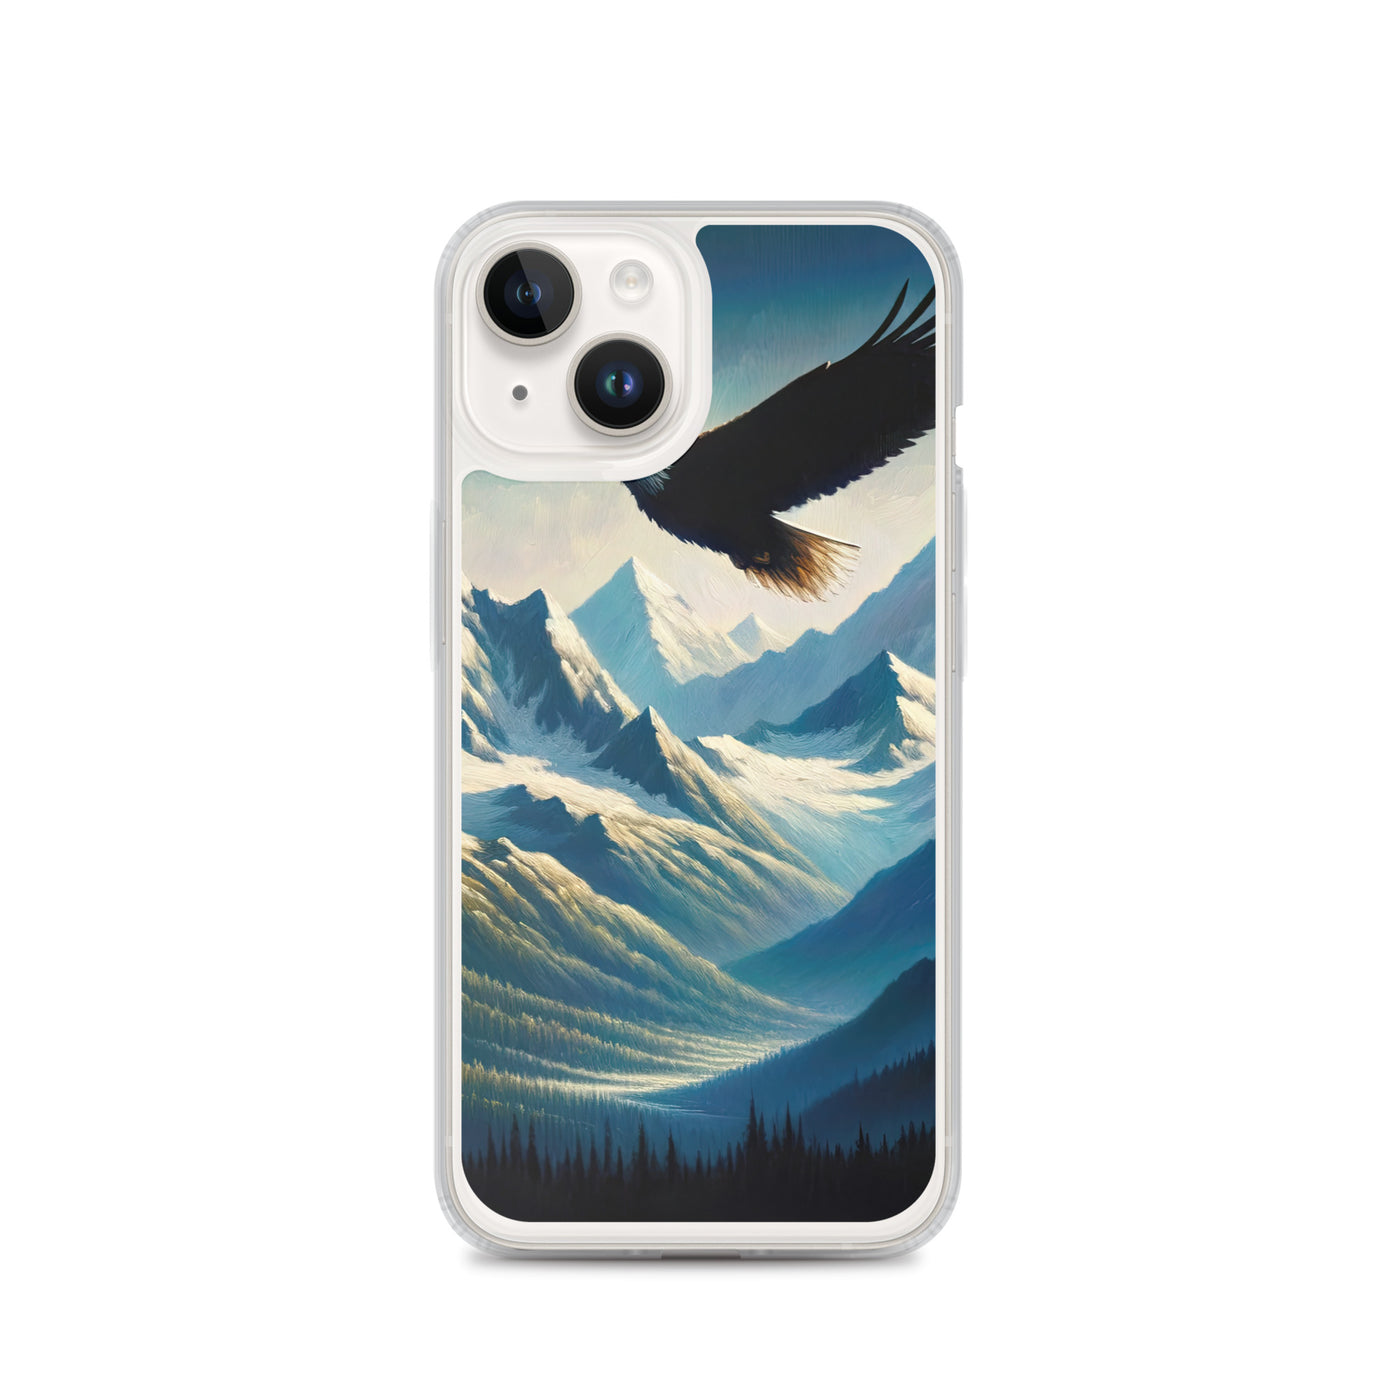 Ölgemälde eines Adlers vor schneebedeckten Bergsilhouetten - iPhone Schutzhülle (durchsichtig) berge xxx yyy zzz iPhone 14